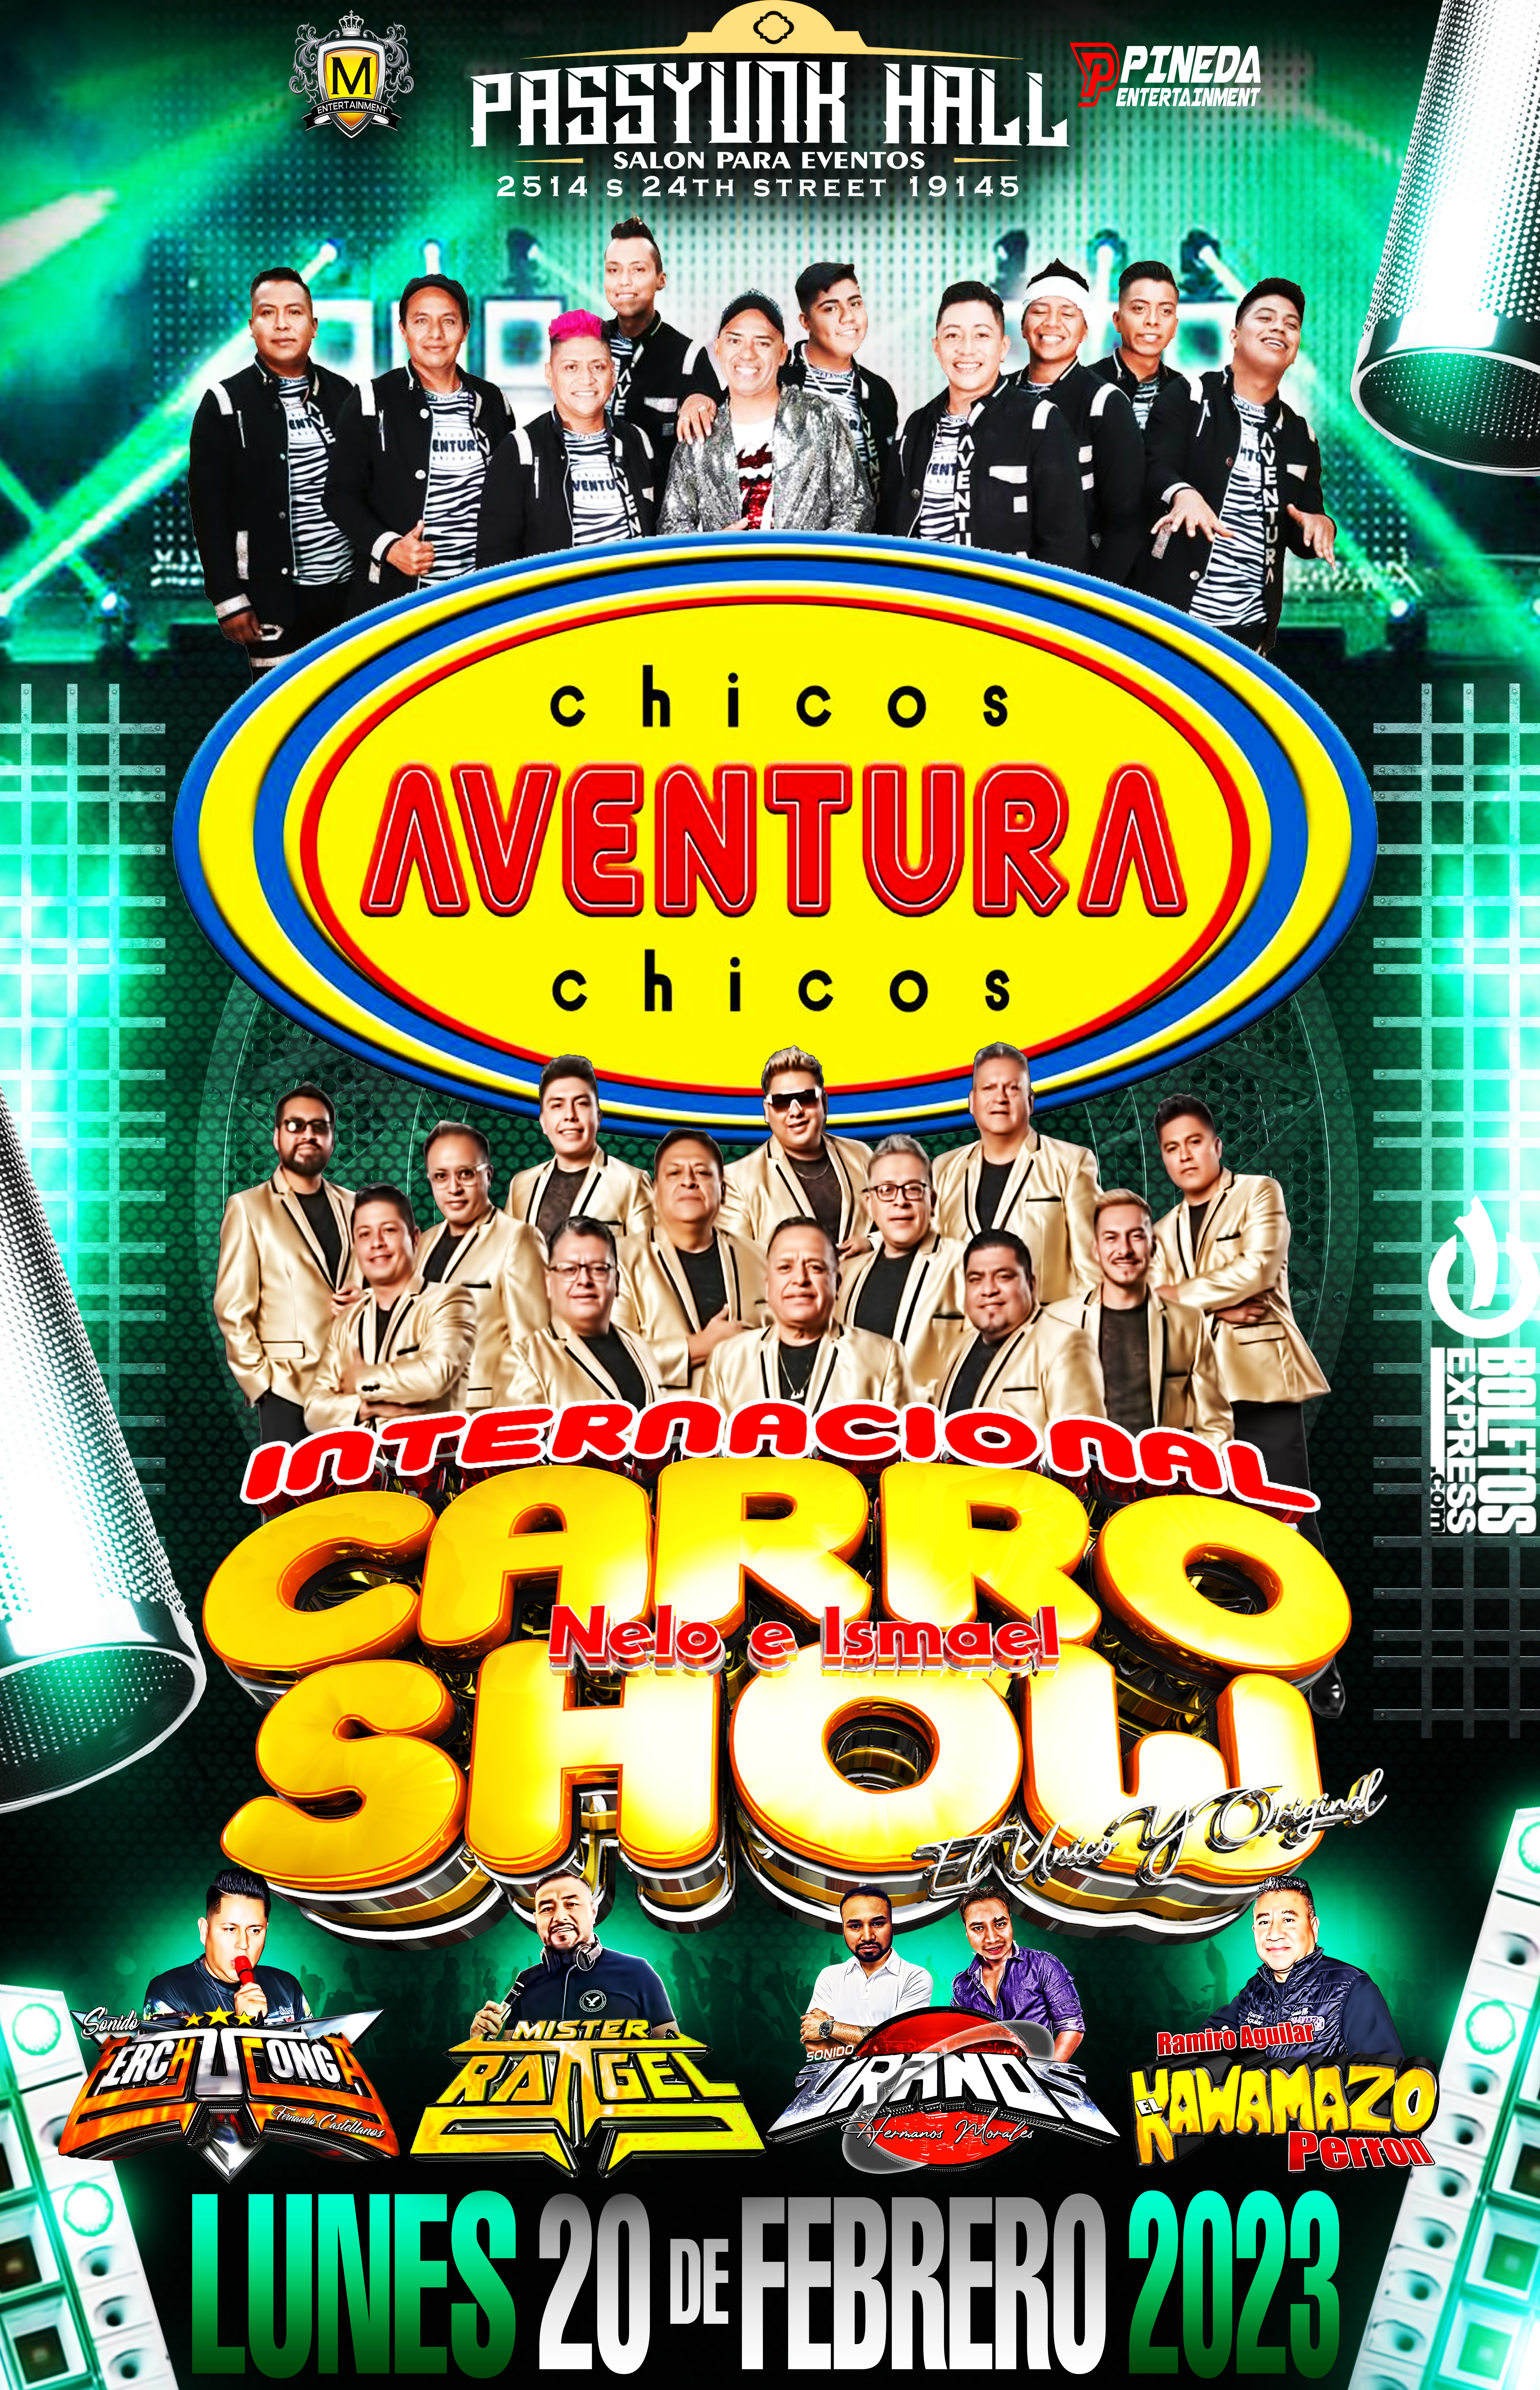 CHICOS AVENTURA & INTERNACIONAL CARRO SHOW